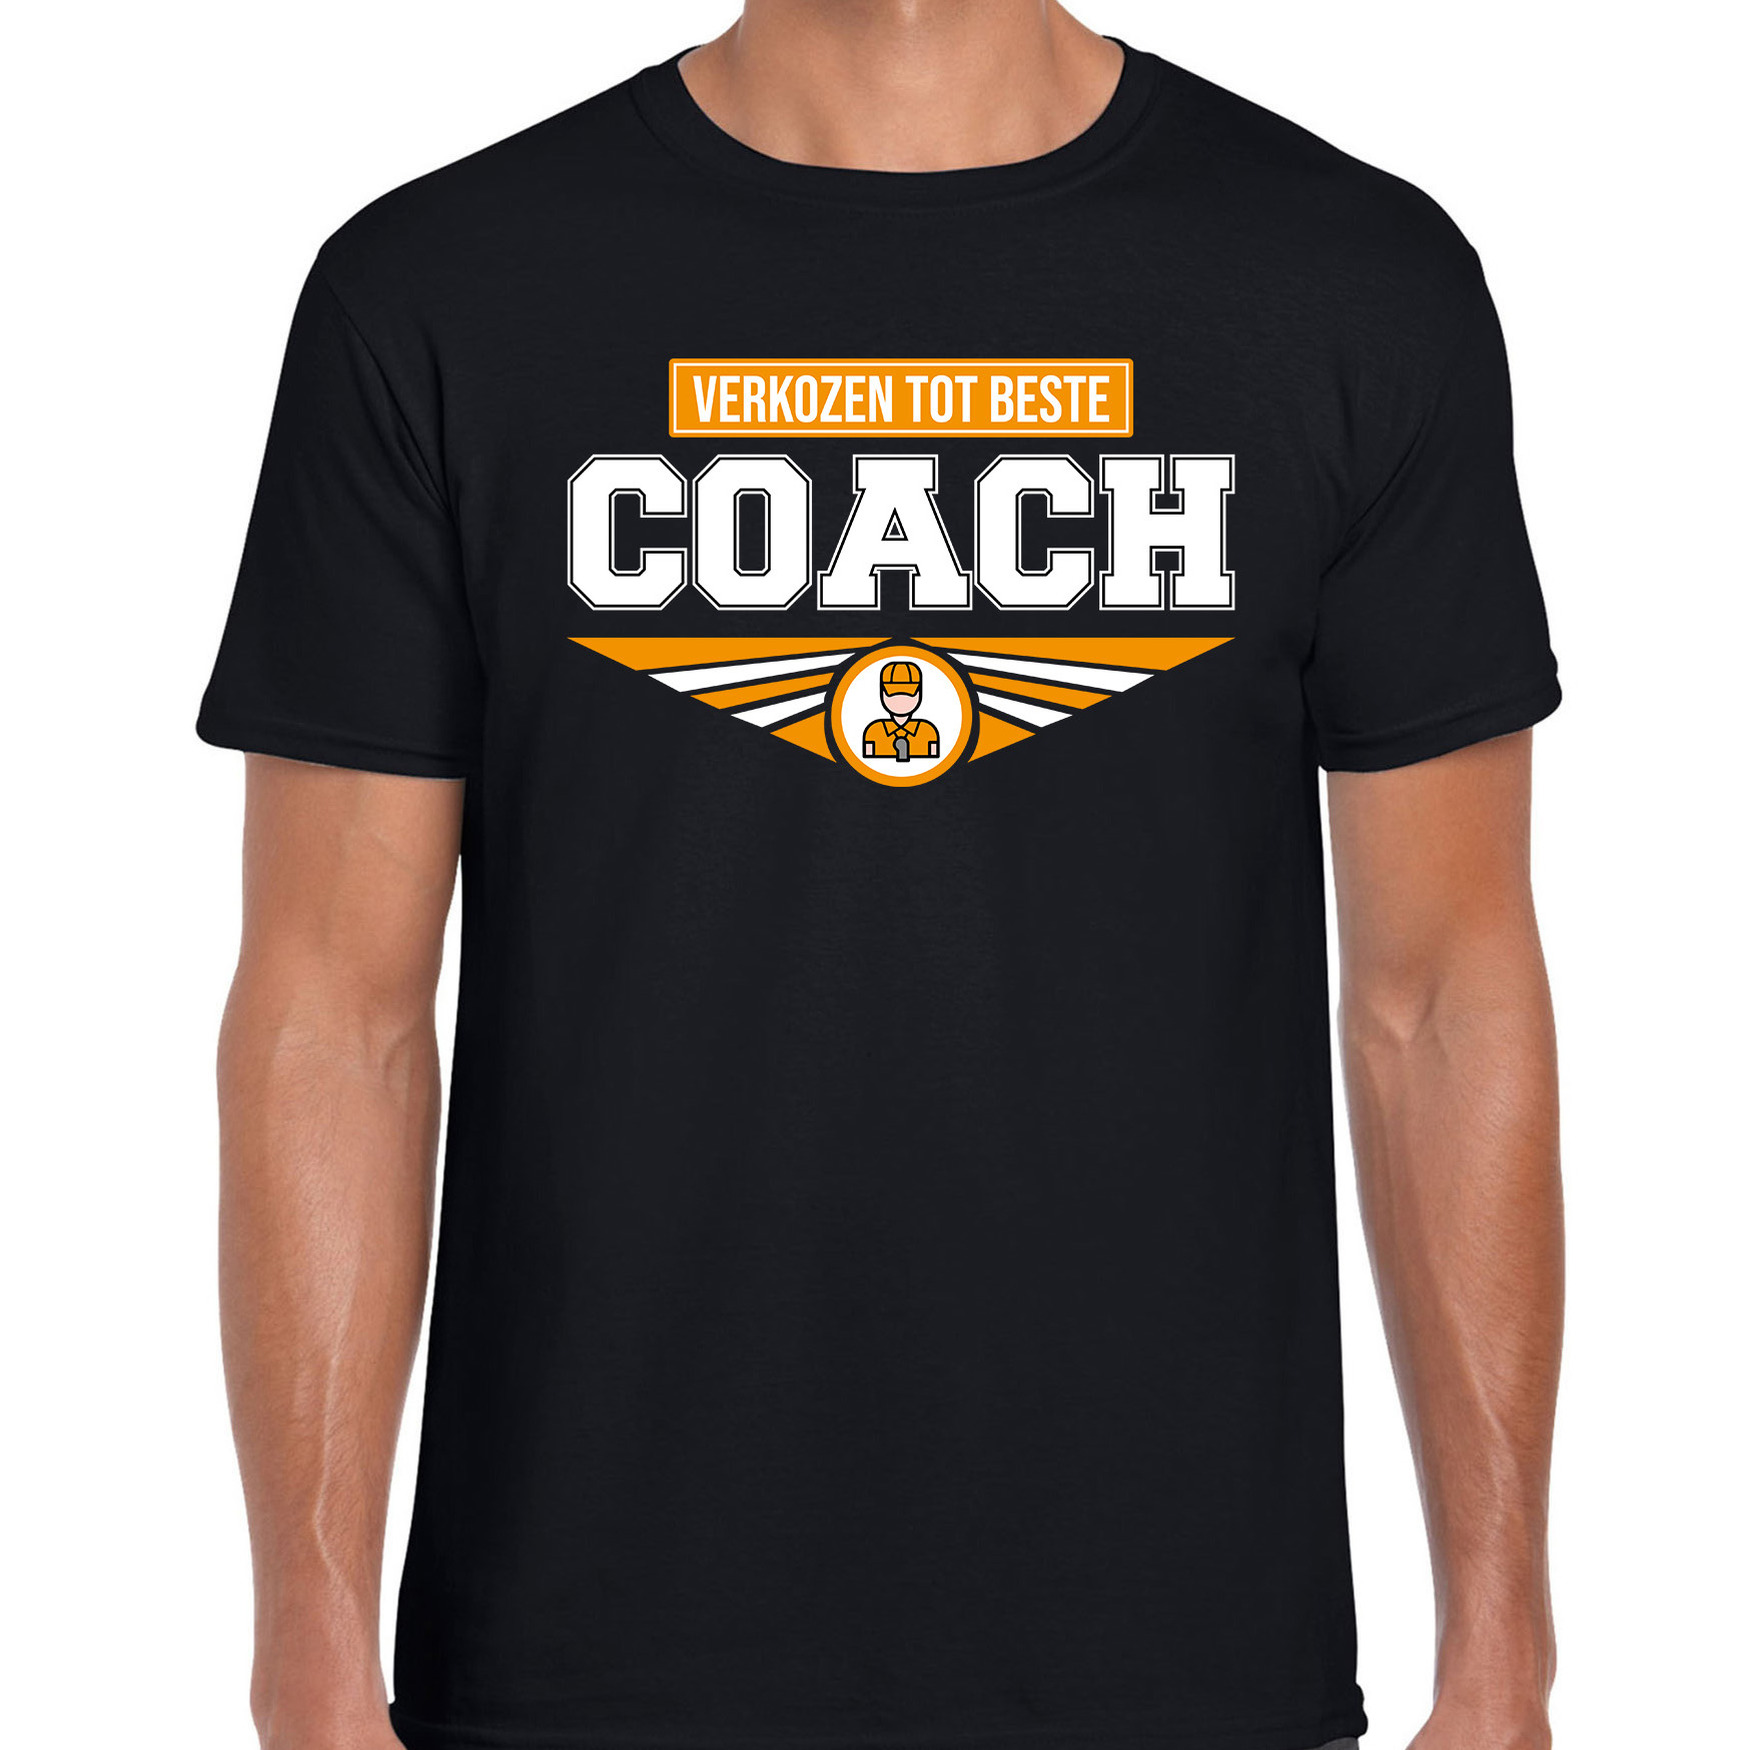 Verkozen tot beste coach t-shirt zwart heren beroepen shirt